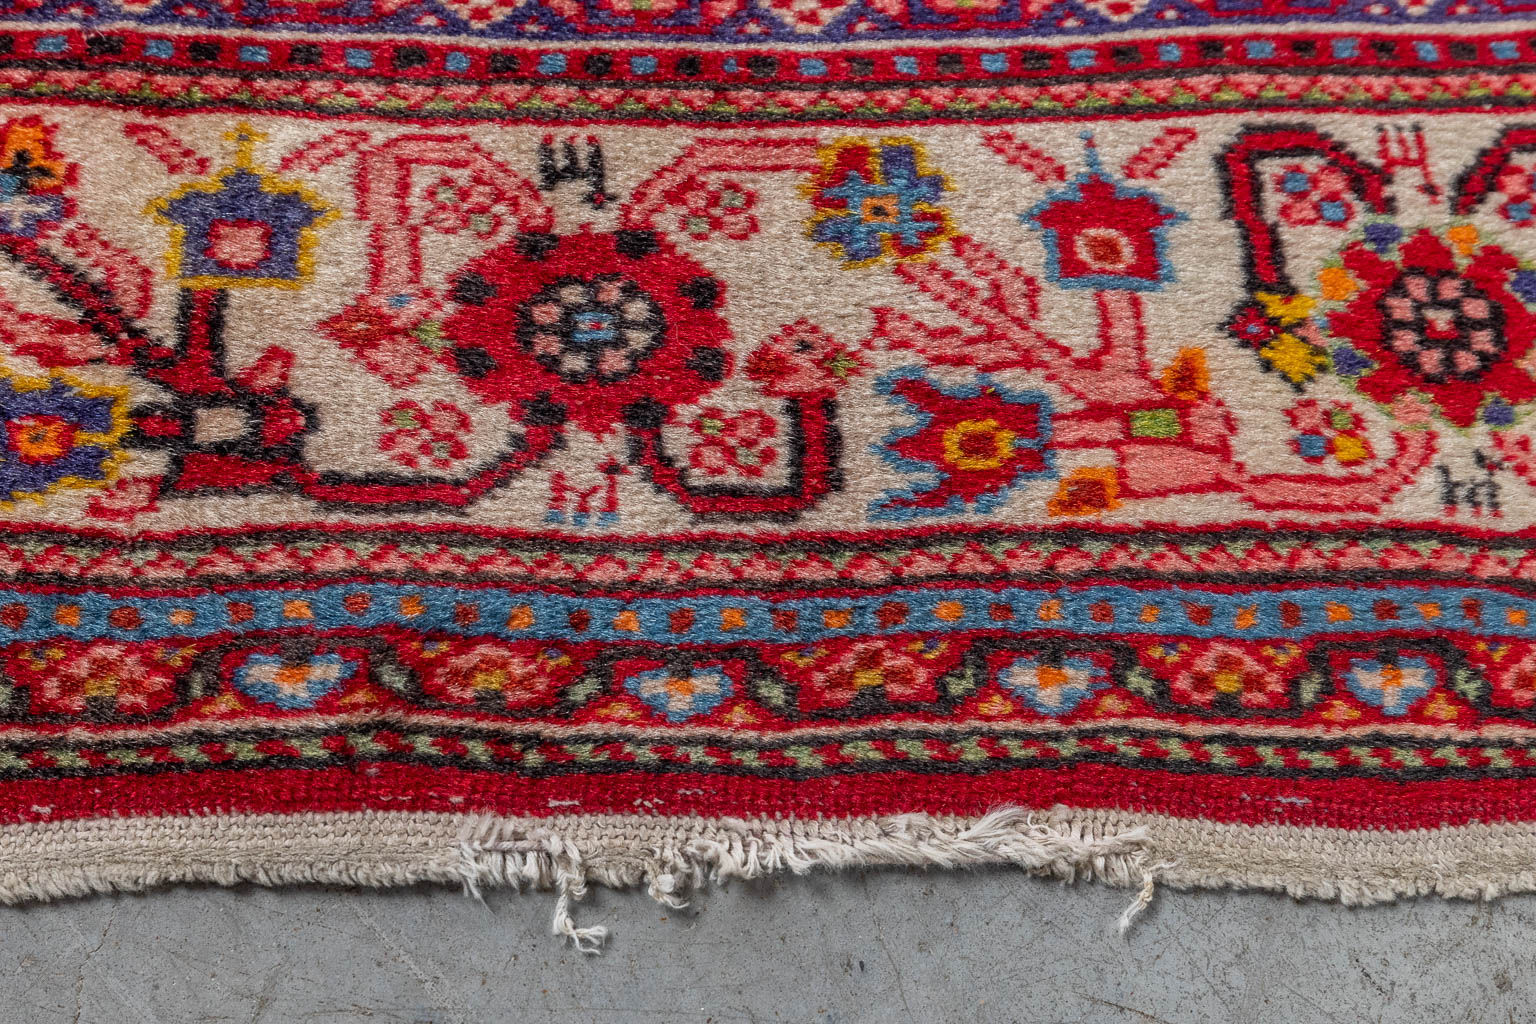 Three Oriental hand-made carpets, Bidjar & Kashan. (D:242 x W:170 cm)